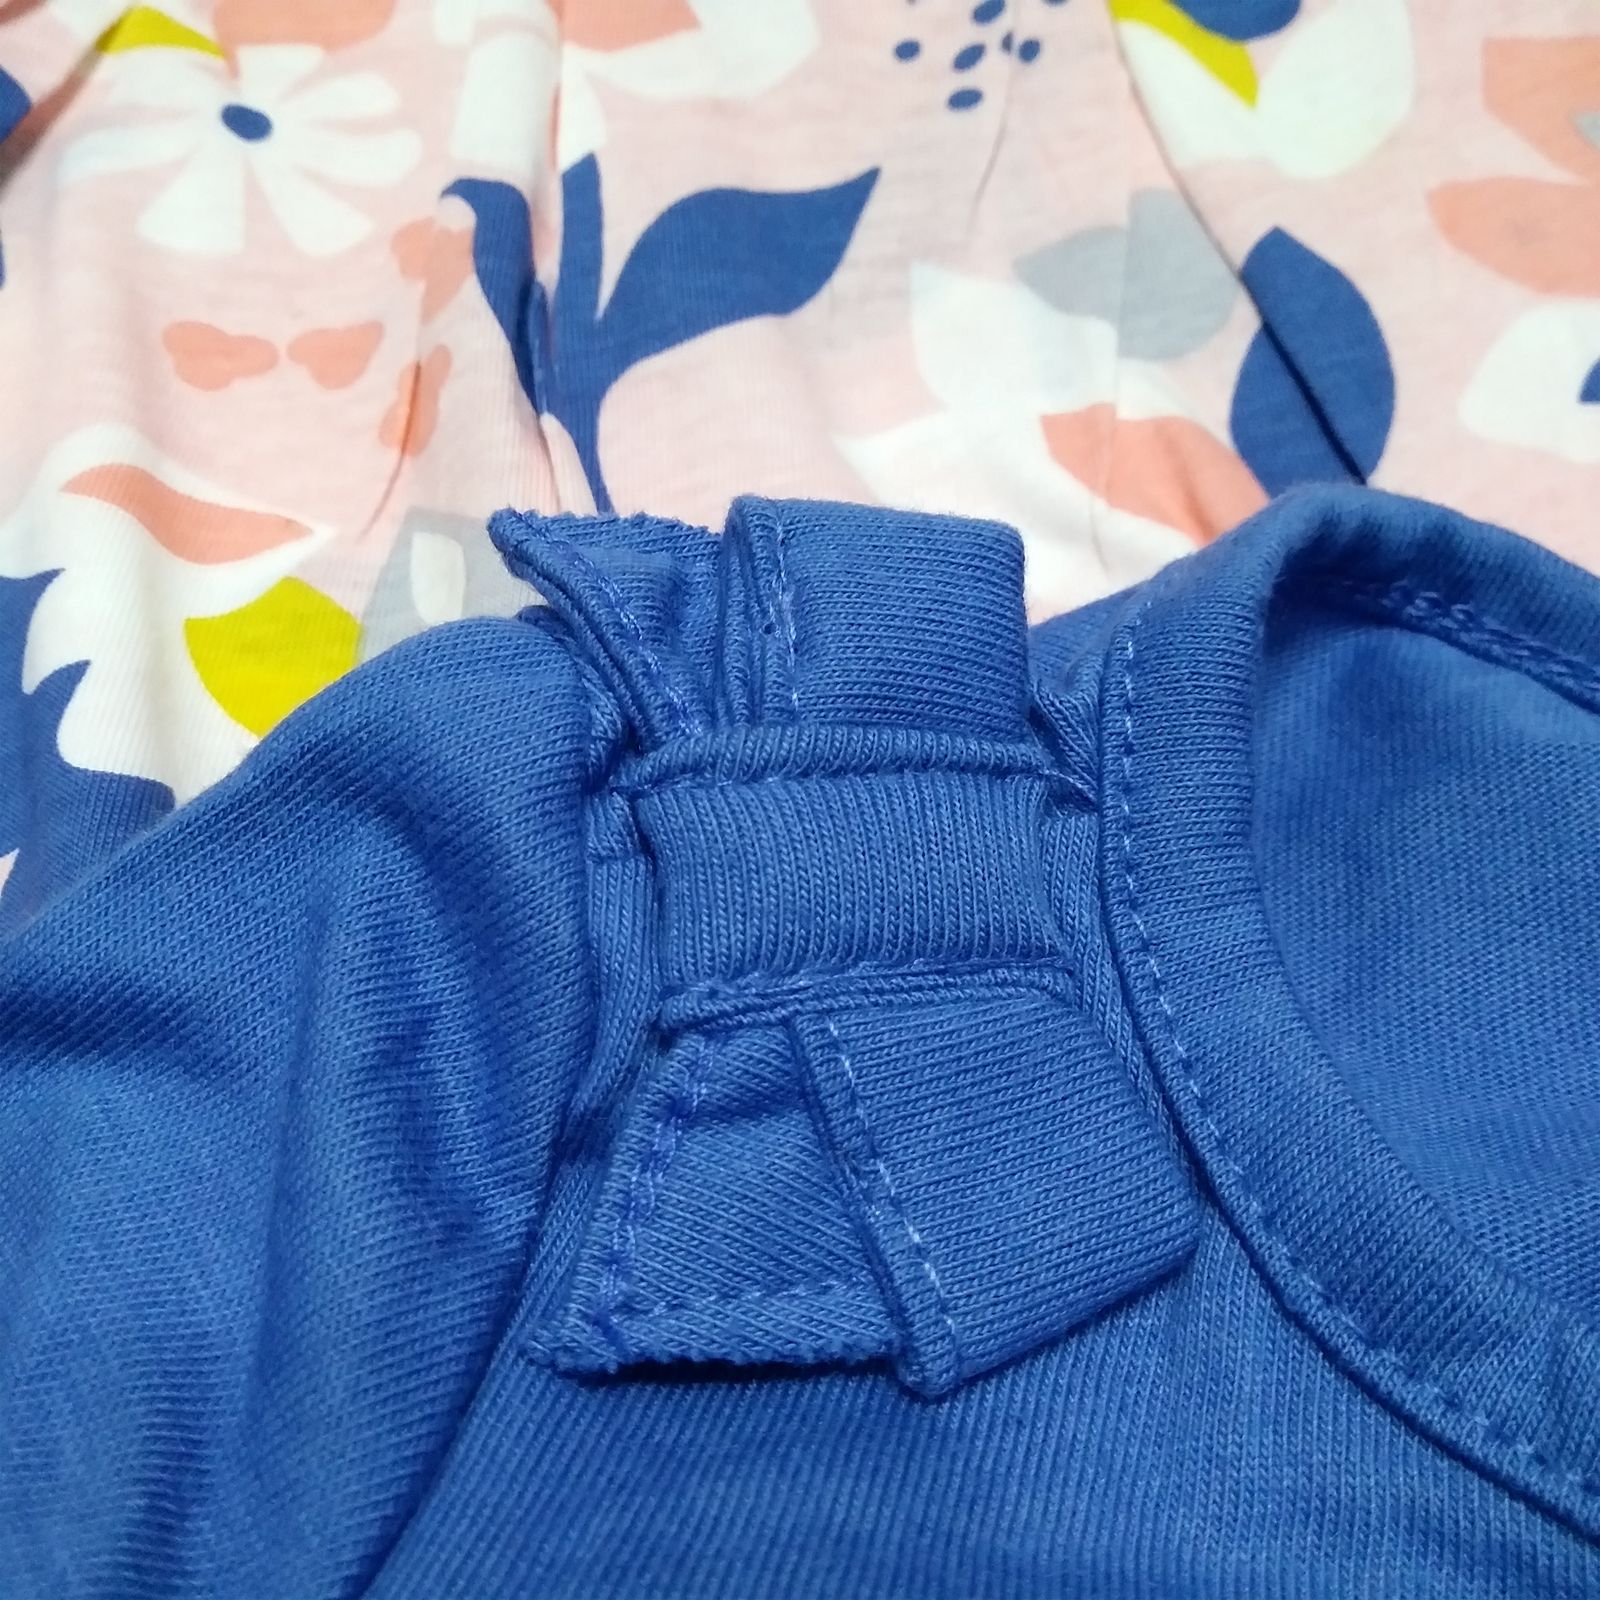 ست کت و پیراهن نوزادی دخترانه کارترز طرح Floral کد M615 -  - 6